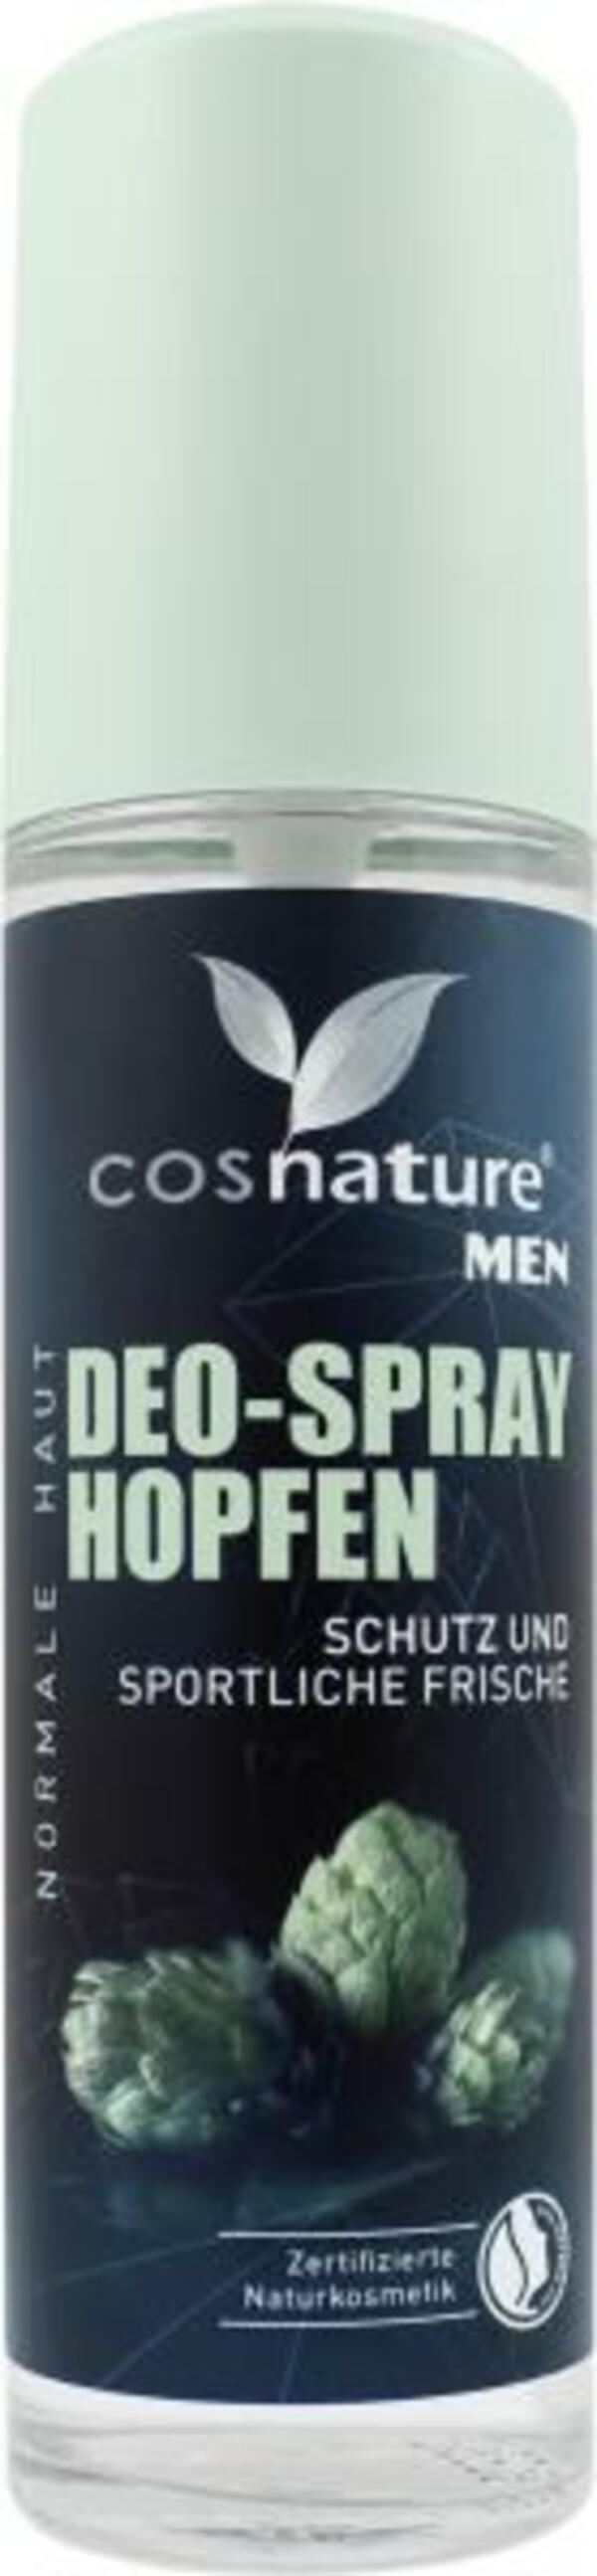 Bild 1 von Cosnature Men Deo-Spray Hopfen